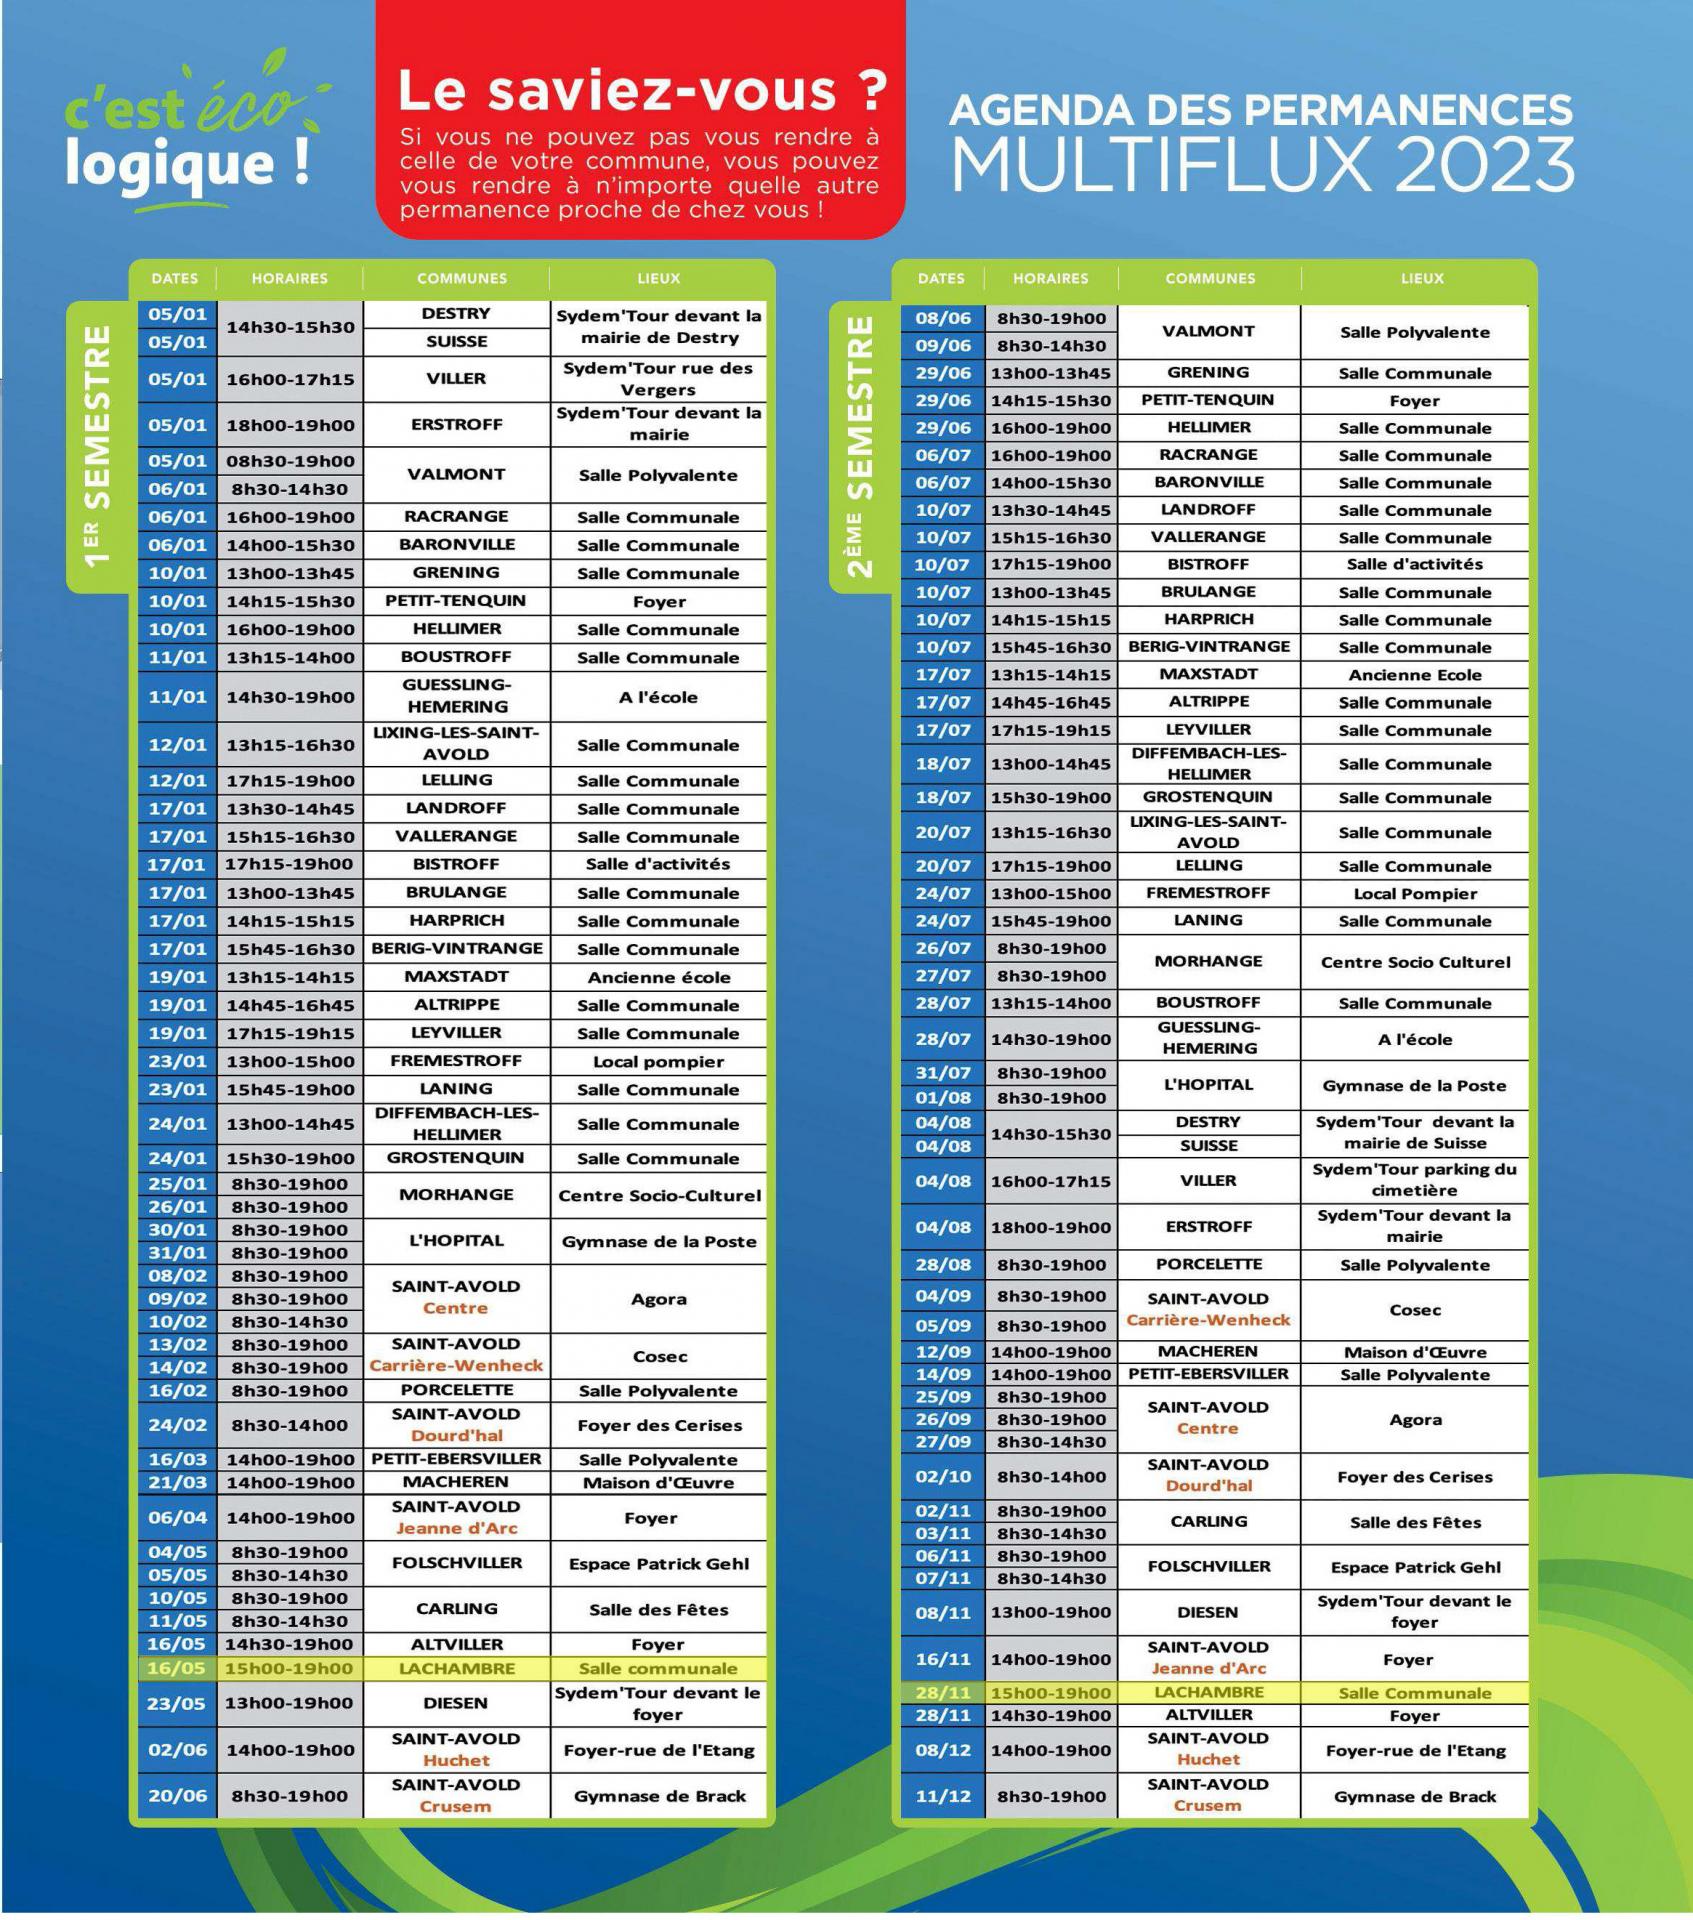 Lachambre calendrier de Collecte des Ordures Ménagères 2023 - Permanences multiflux